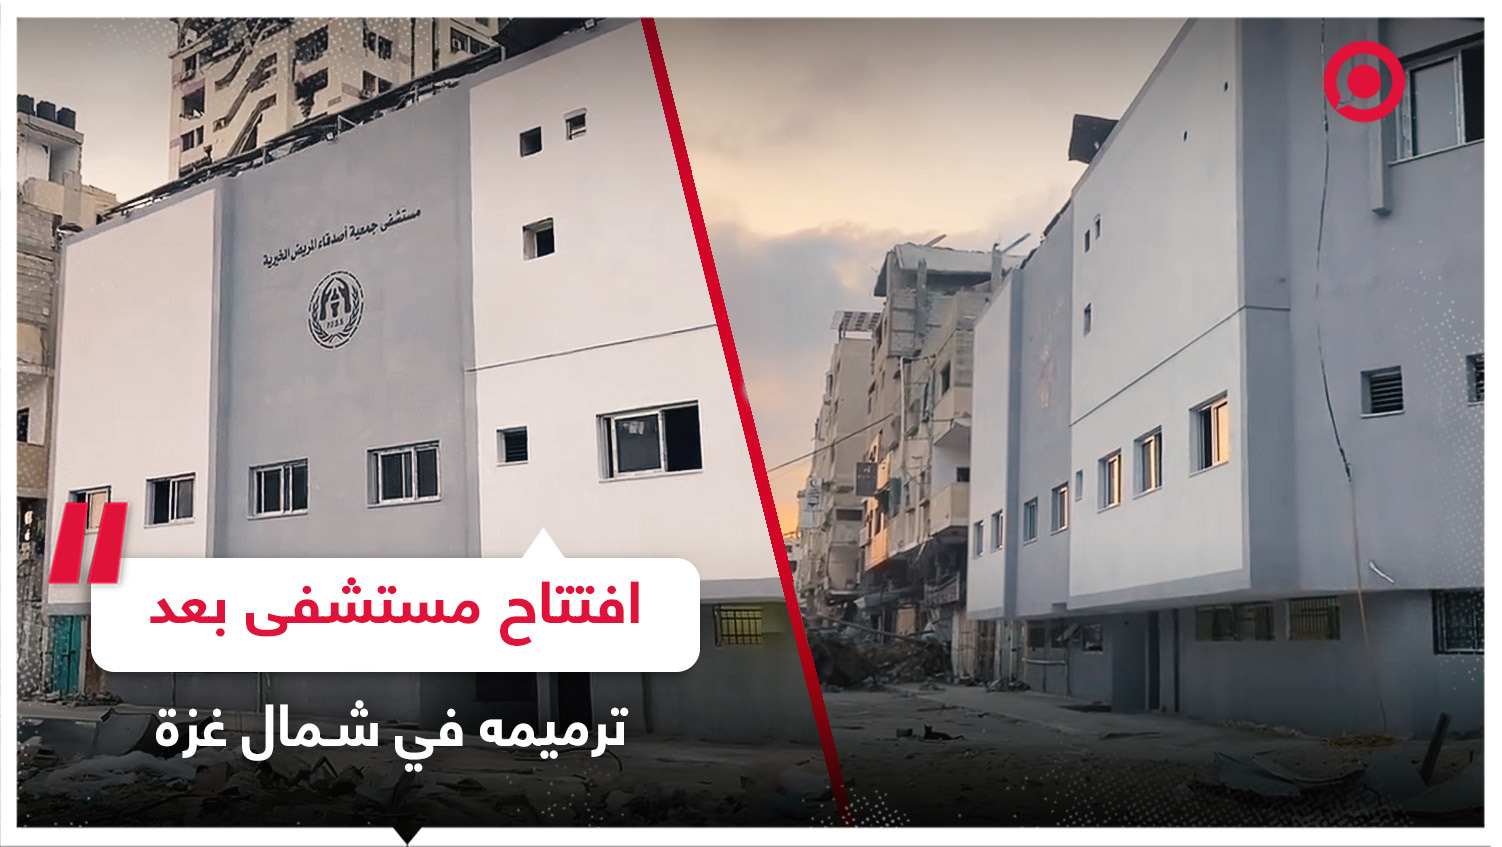 افتتاح مستشفى "أصدقاء المريض" شمال قطاع غزة بعد انتهاء أعمال ترميمه وصيانته